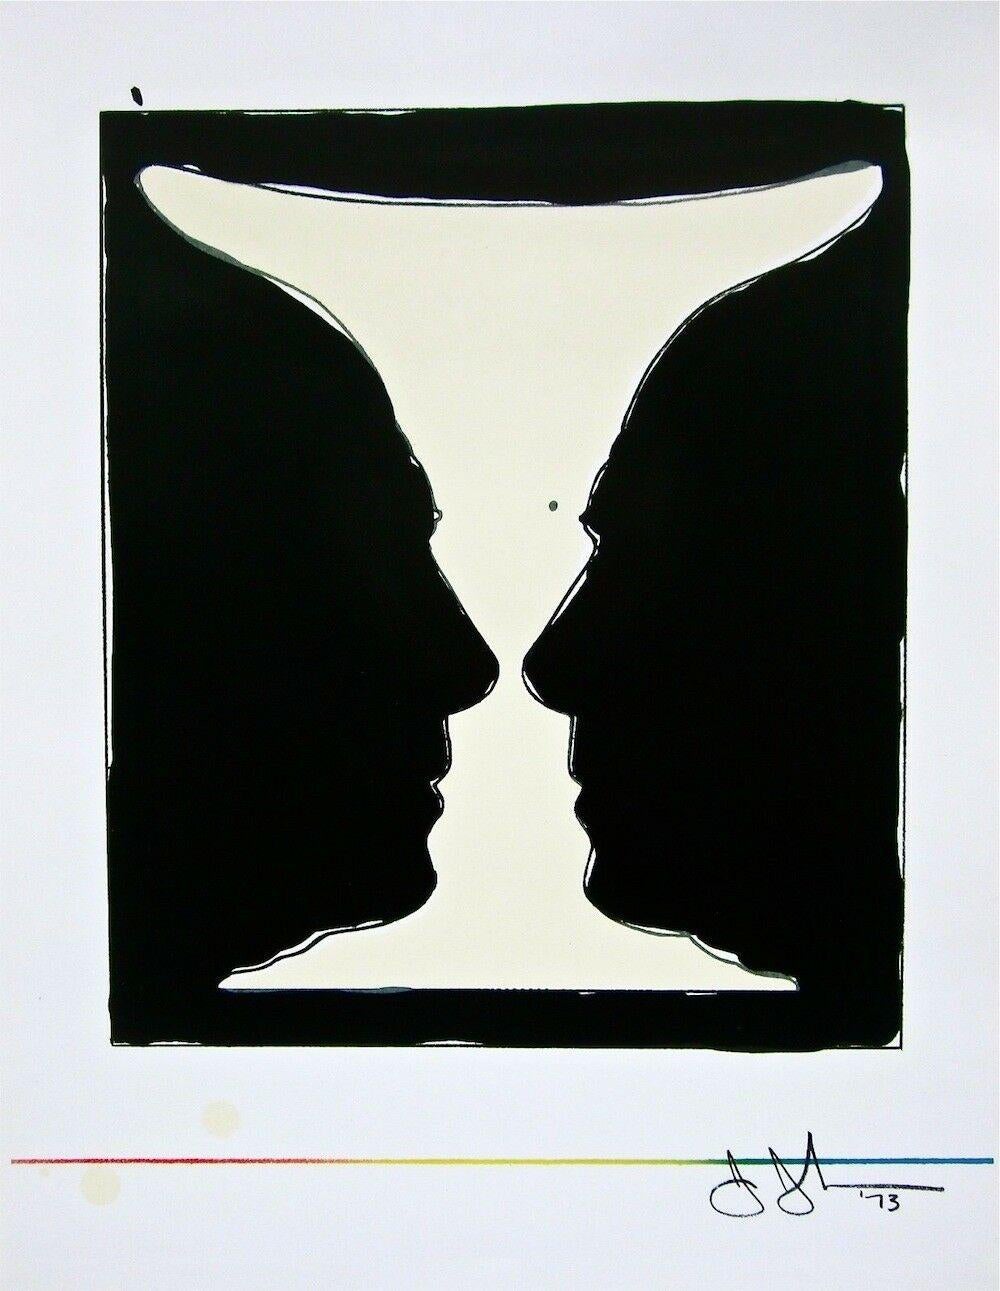 Artistics : Jasper Johns (1930)
Titre : Coupe 2 Picasso (Sparks 113 ; Field 168 ; ULAE 123)
Année : 1973
Support : Lithographie couleur sur papier vélin
Édition : 1,500
Taille : 14 x 10.5 pouces
Inscription : Signé et daté avec la signature de